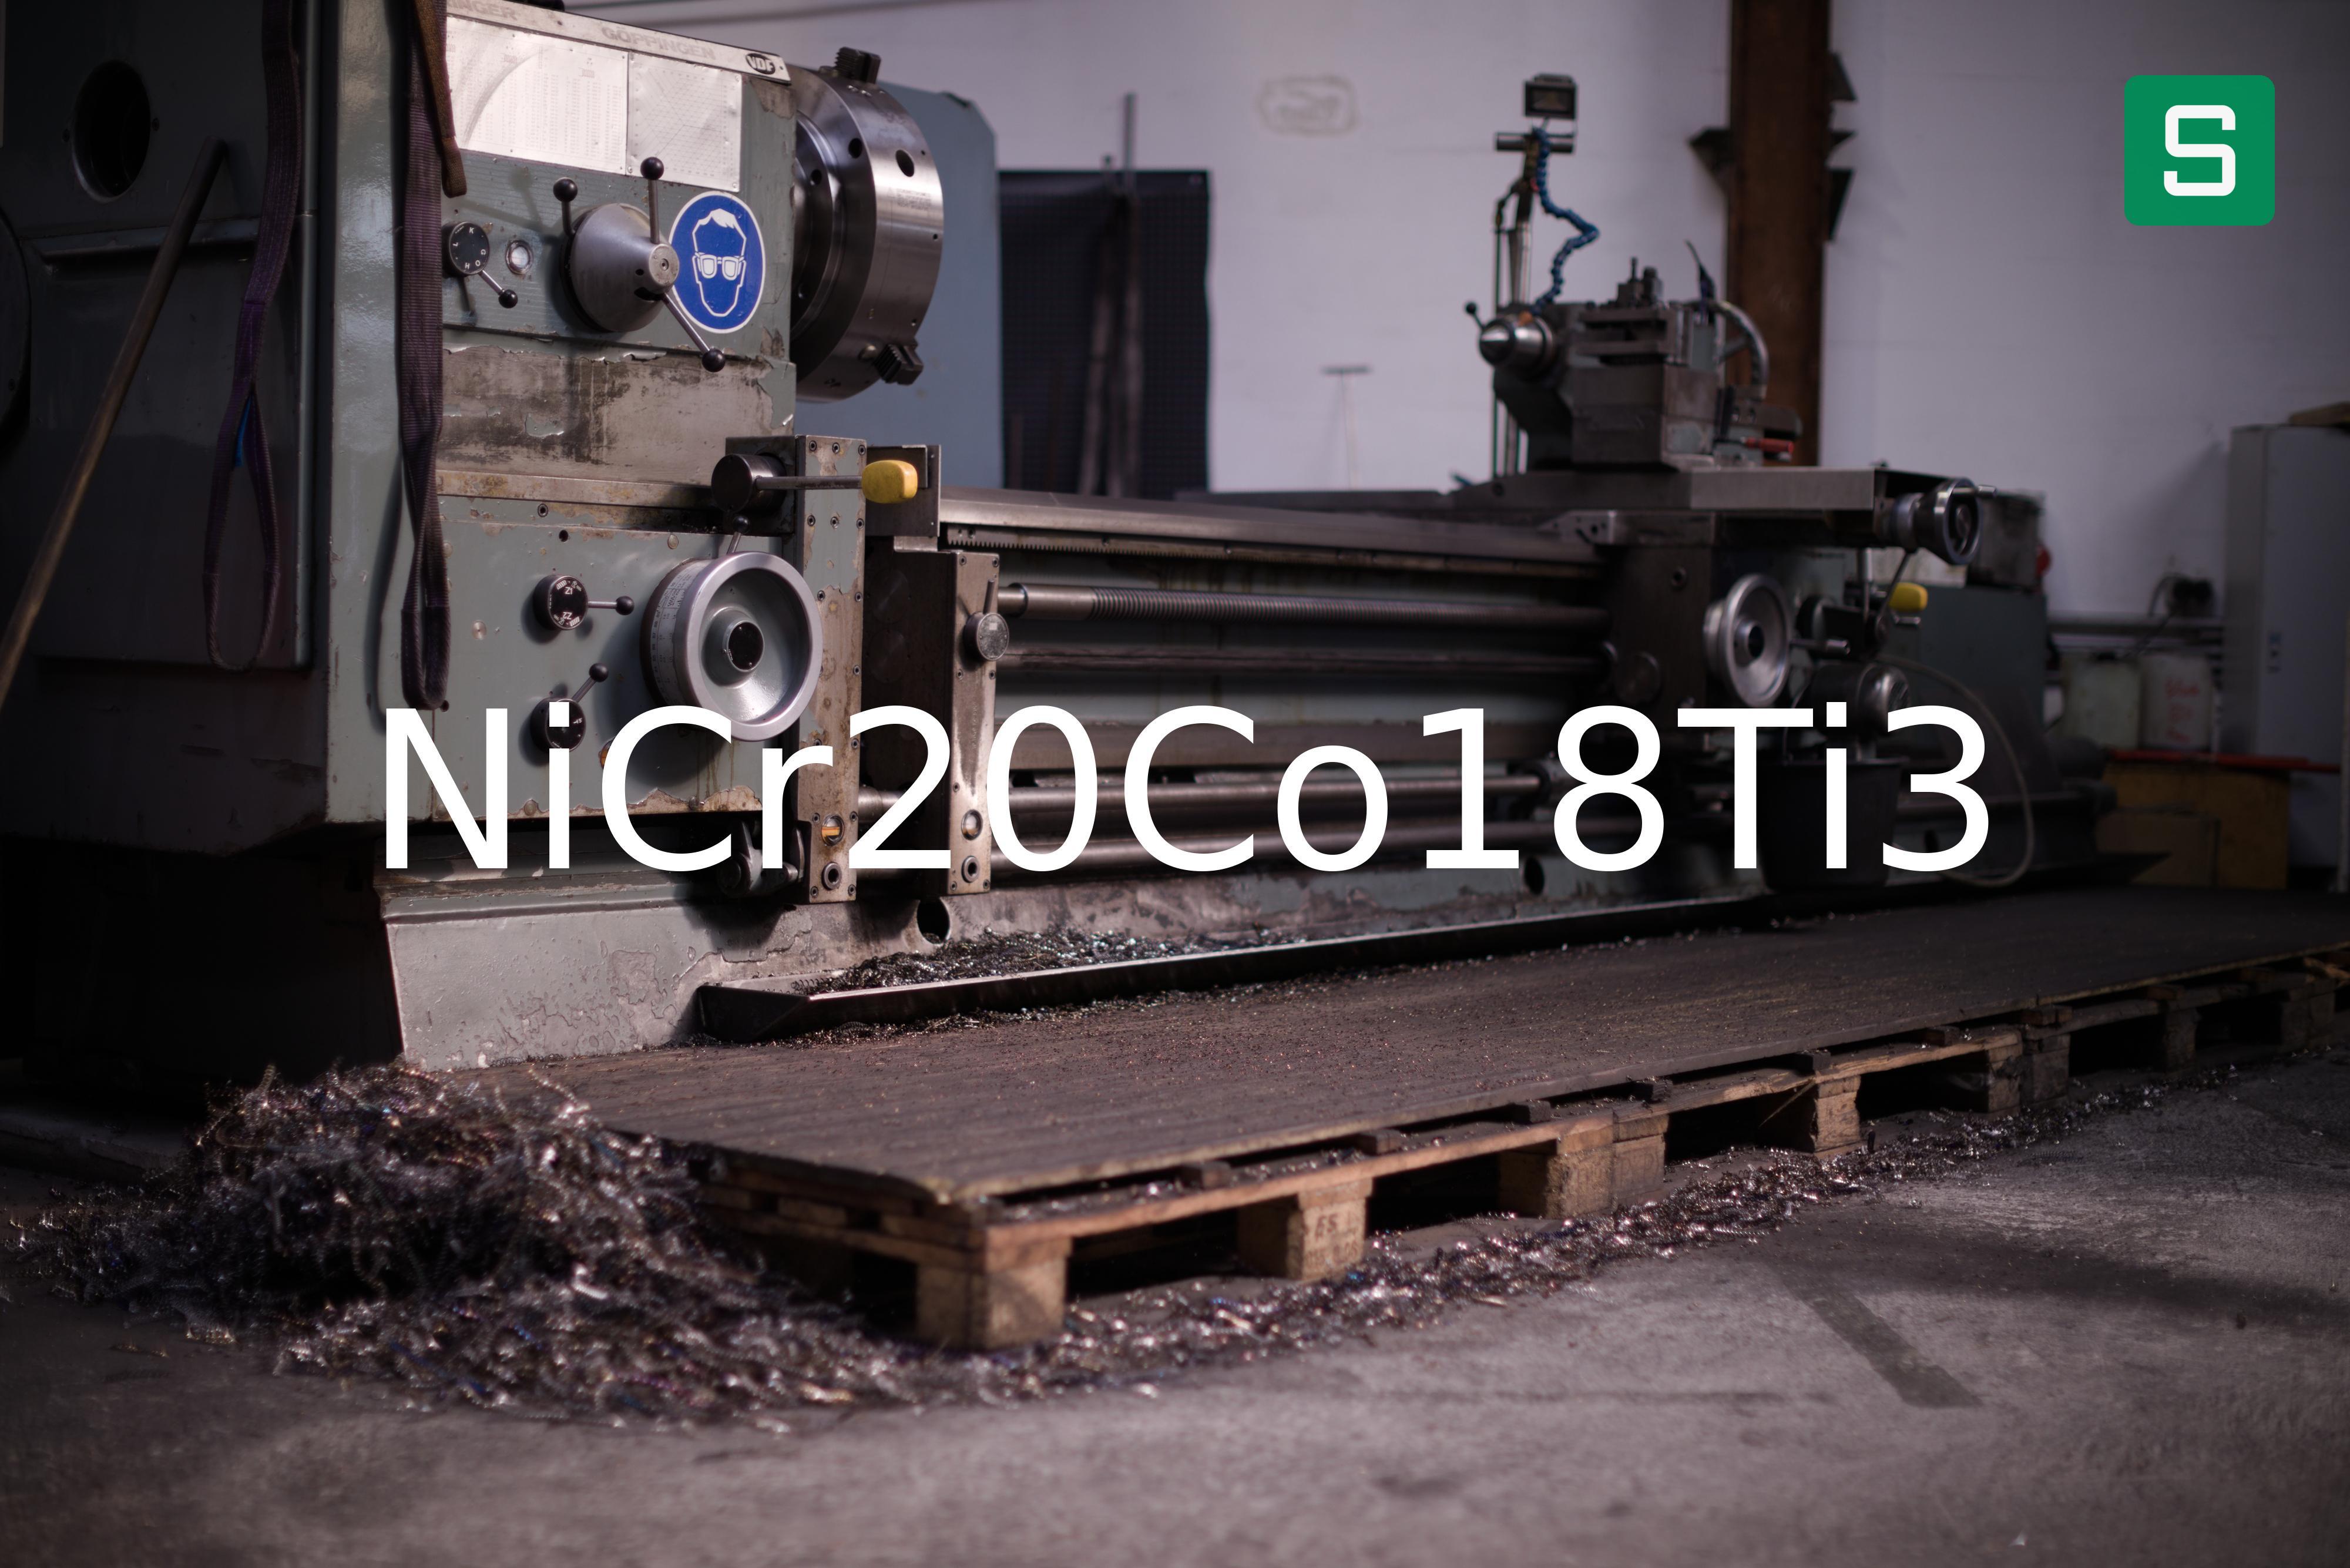 Steel Material: NiCr20Co18Ti3